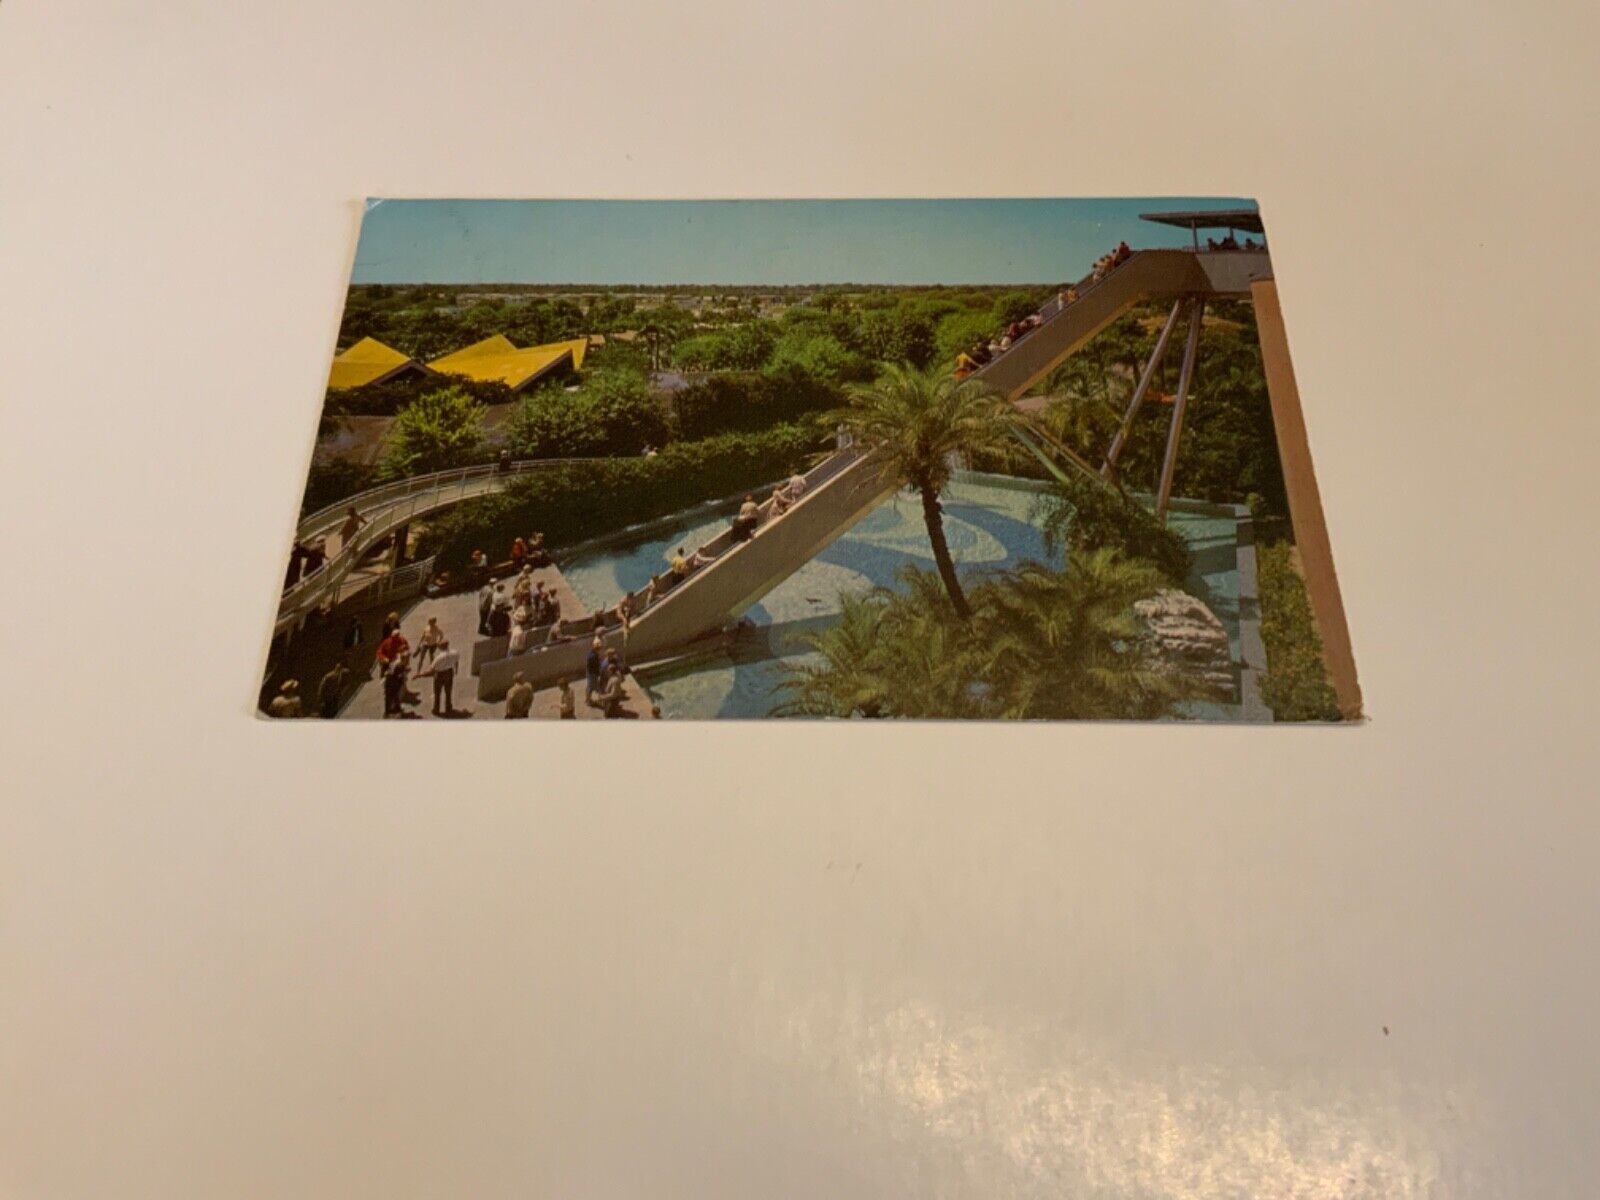 Tampa, Fl. ~ Stairway to the Stars - Busch Gardens - 1966 Vintage Postcard